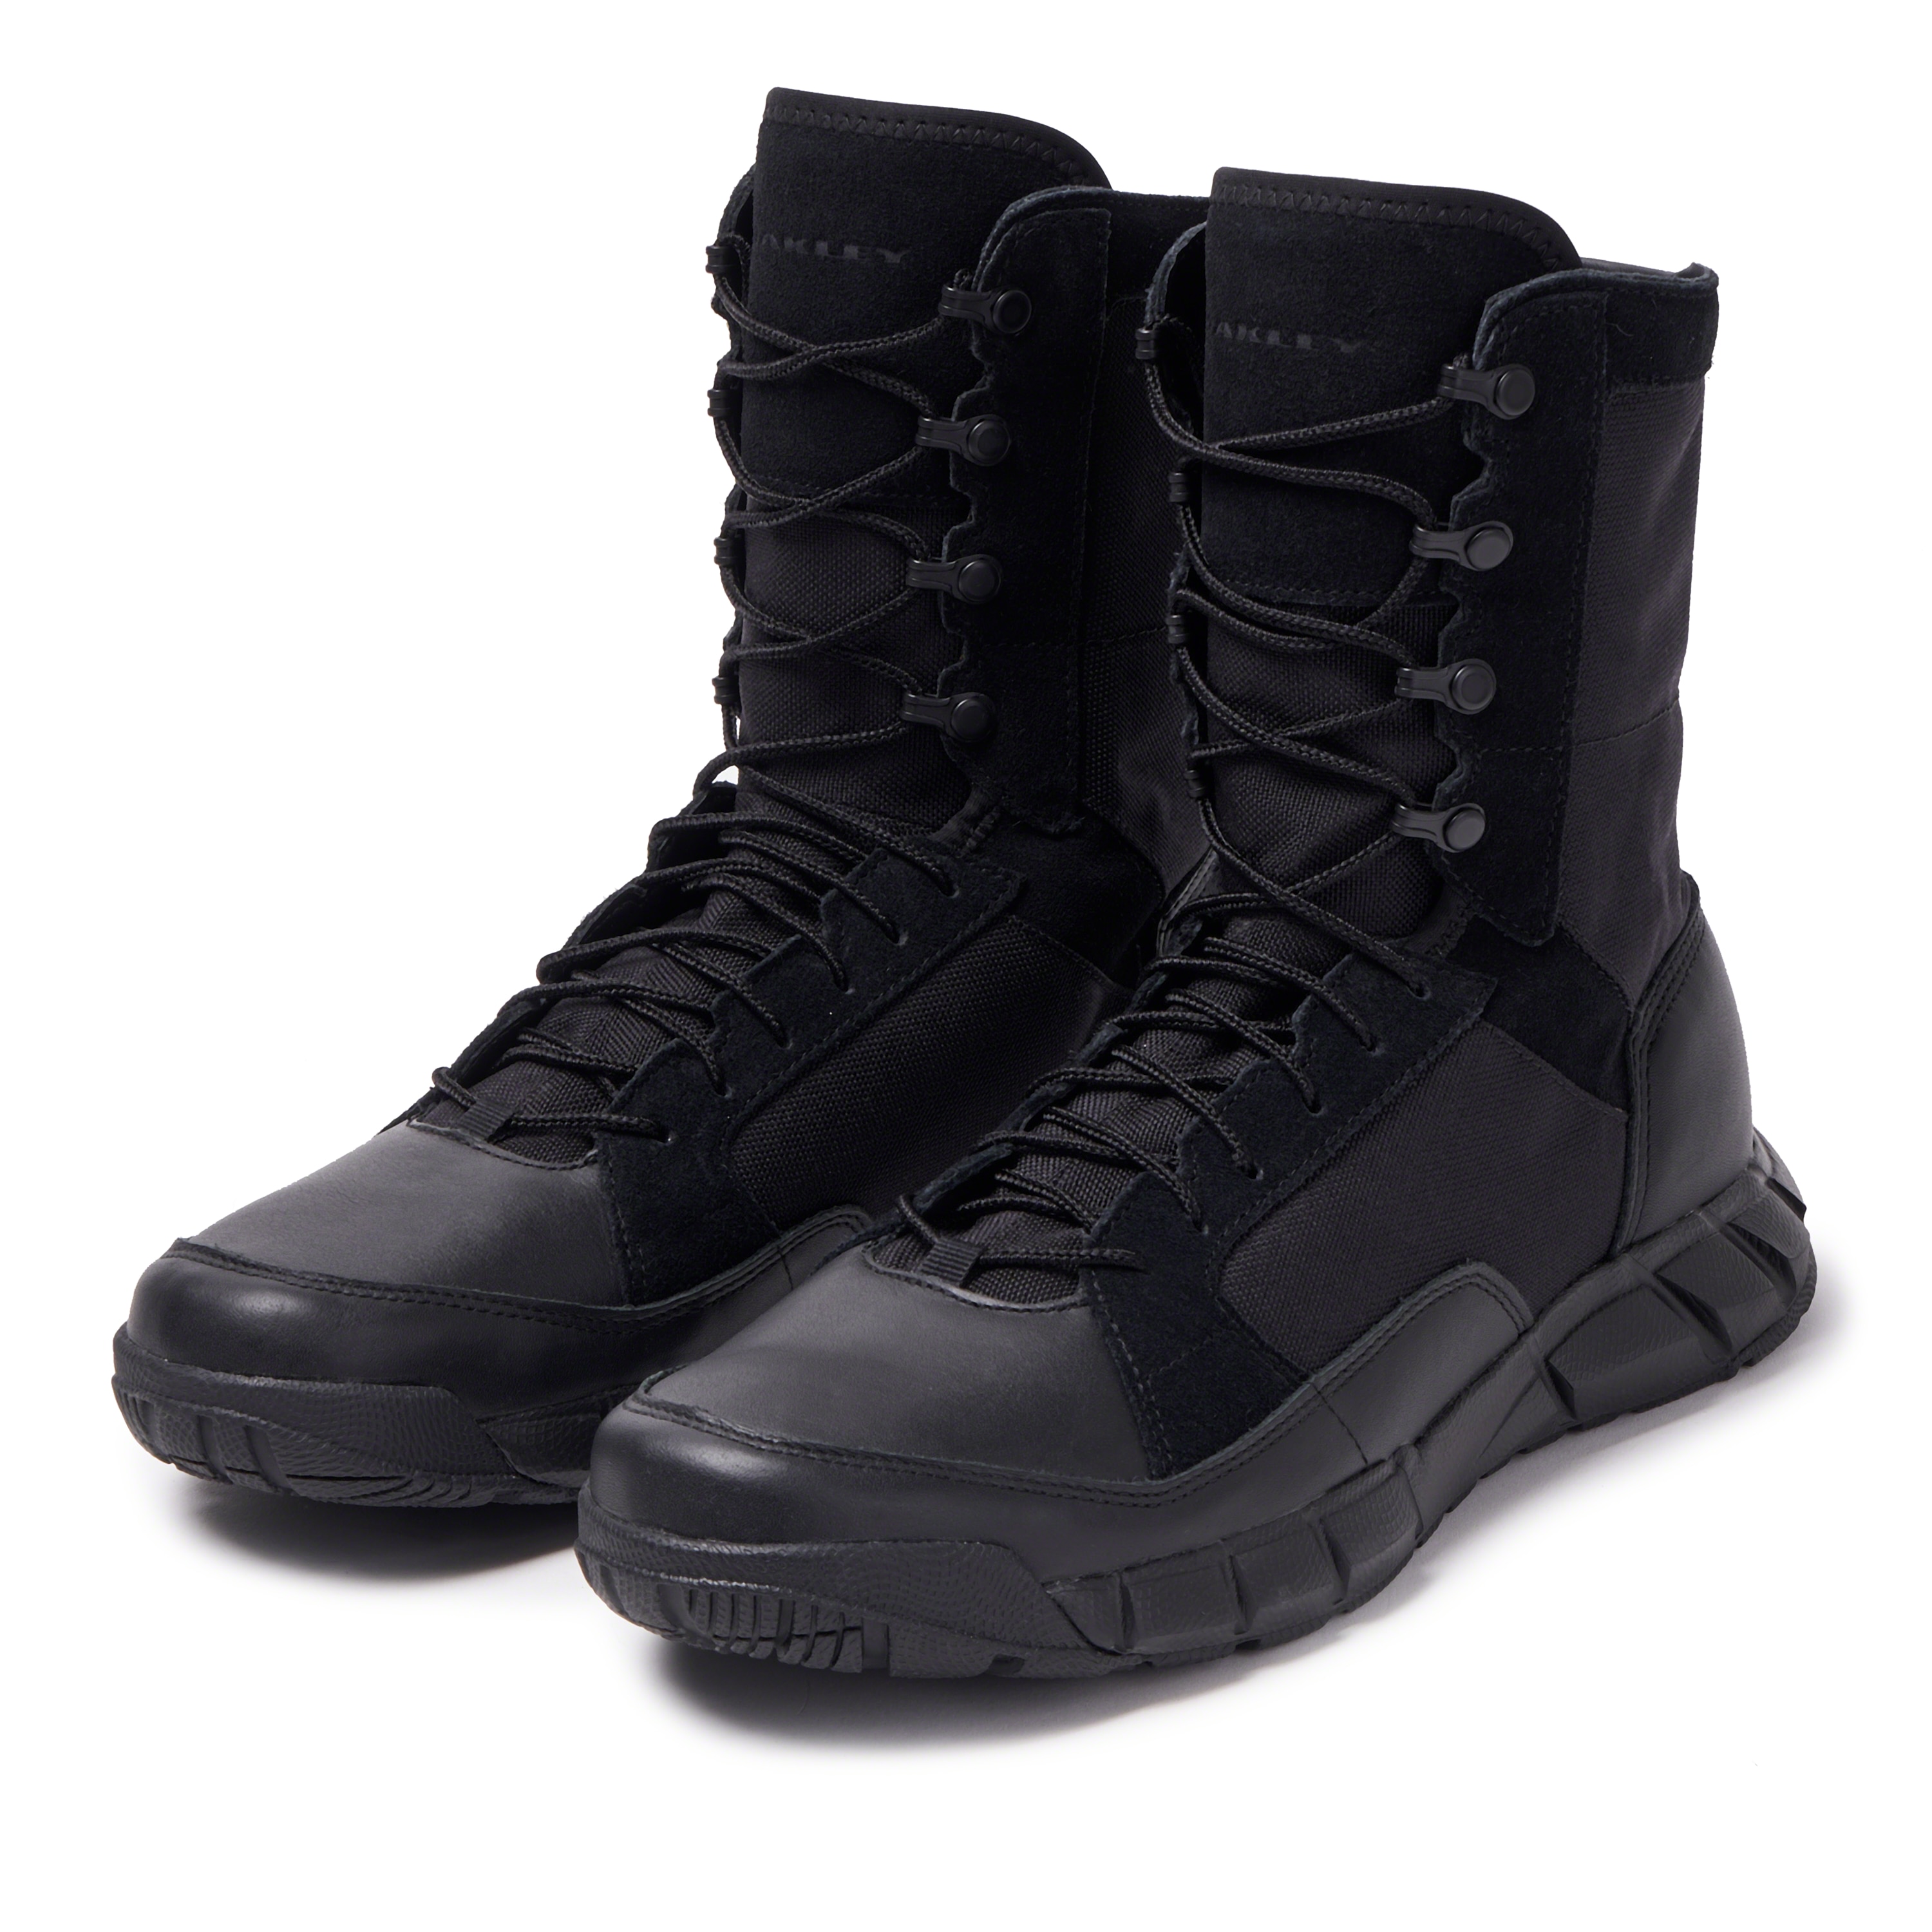 Oakley SI Light Patrol Boot - Blackout - 11190-02E | Oakley OSI Store ...